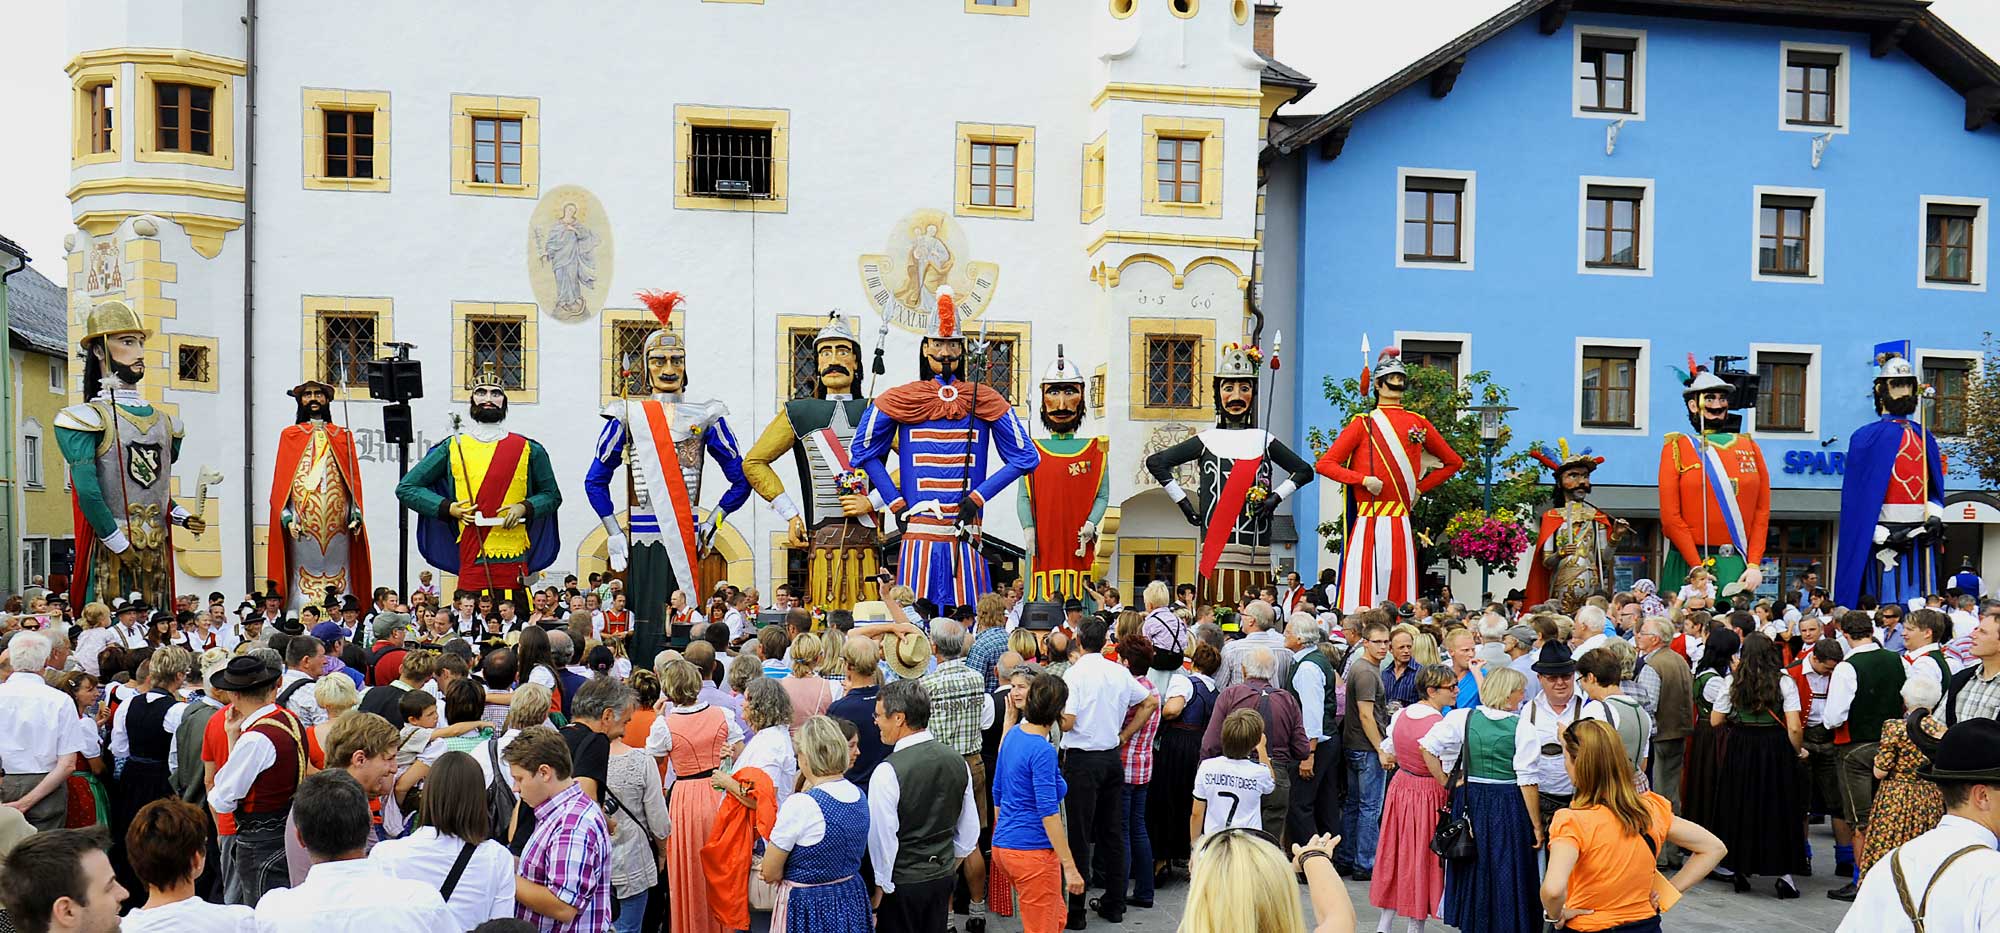 5 spectacular traditional festivals in Austria Travel to Austria